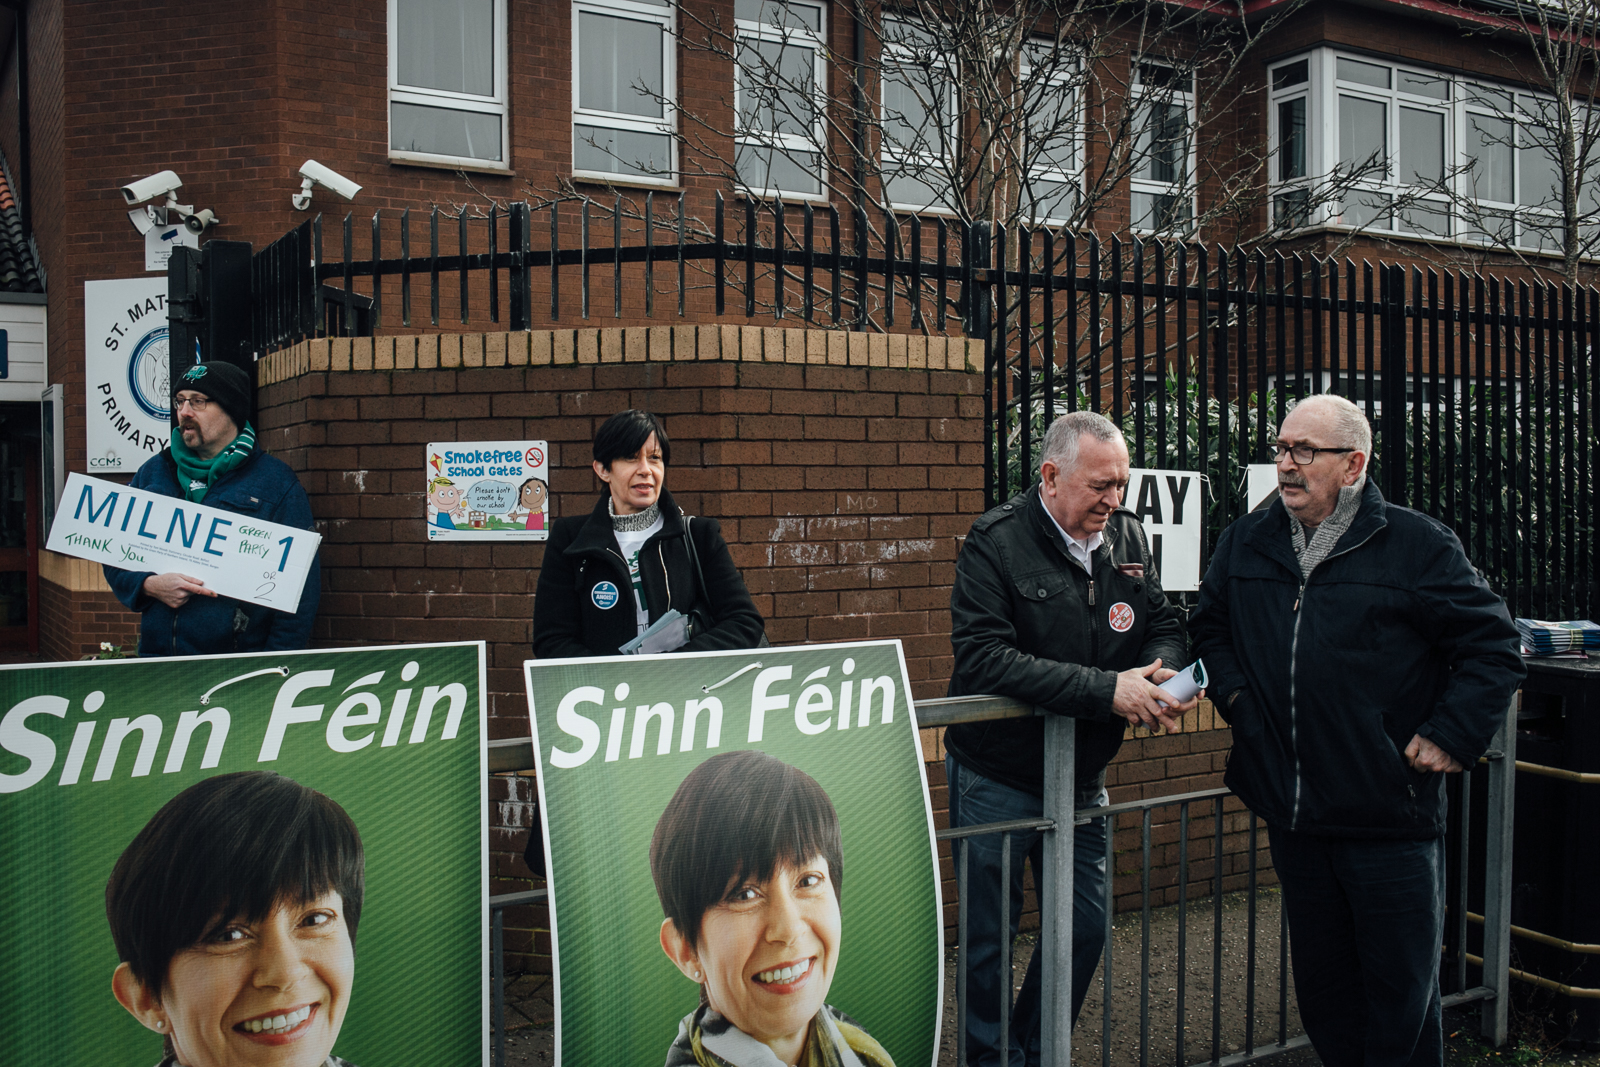 Belfast, le 2 mars 2017. Jour d'éléctions législatives anticipées à Belfast. Dans East Belfast, une enclave republicaine, la candidate du Sinn Fein (parti républicain catholique) attend ses électeurs.